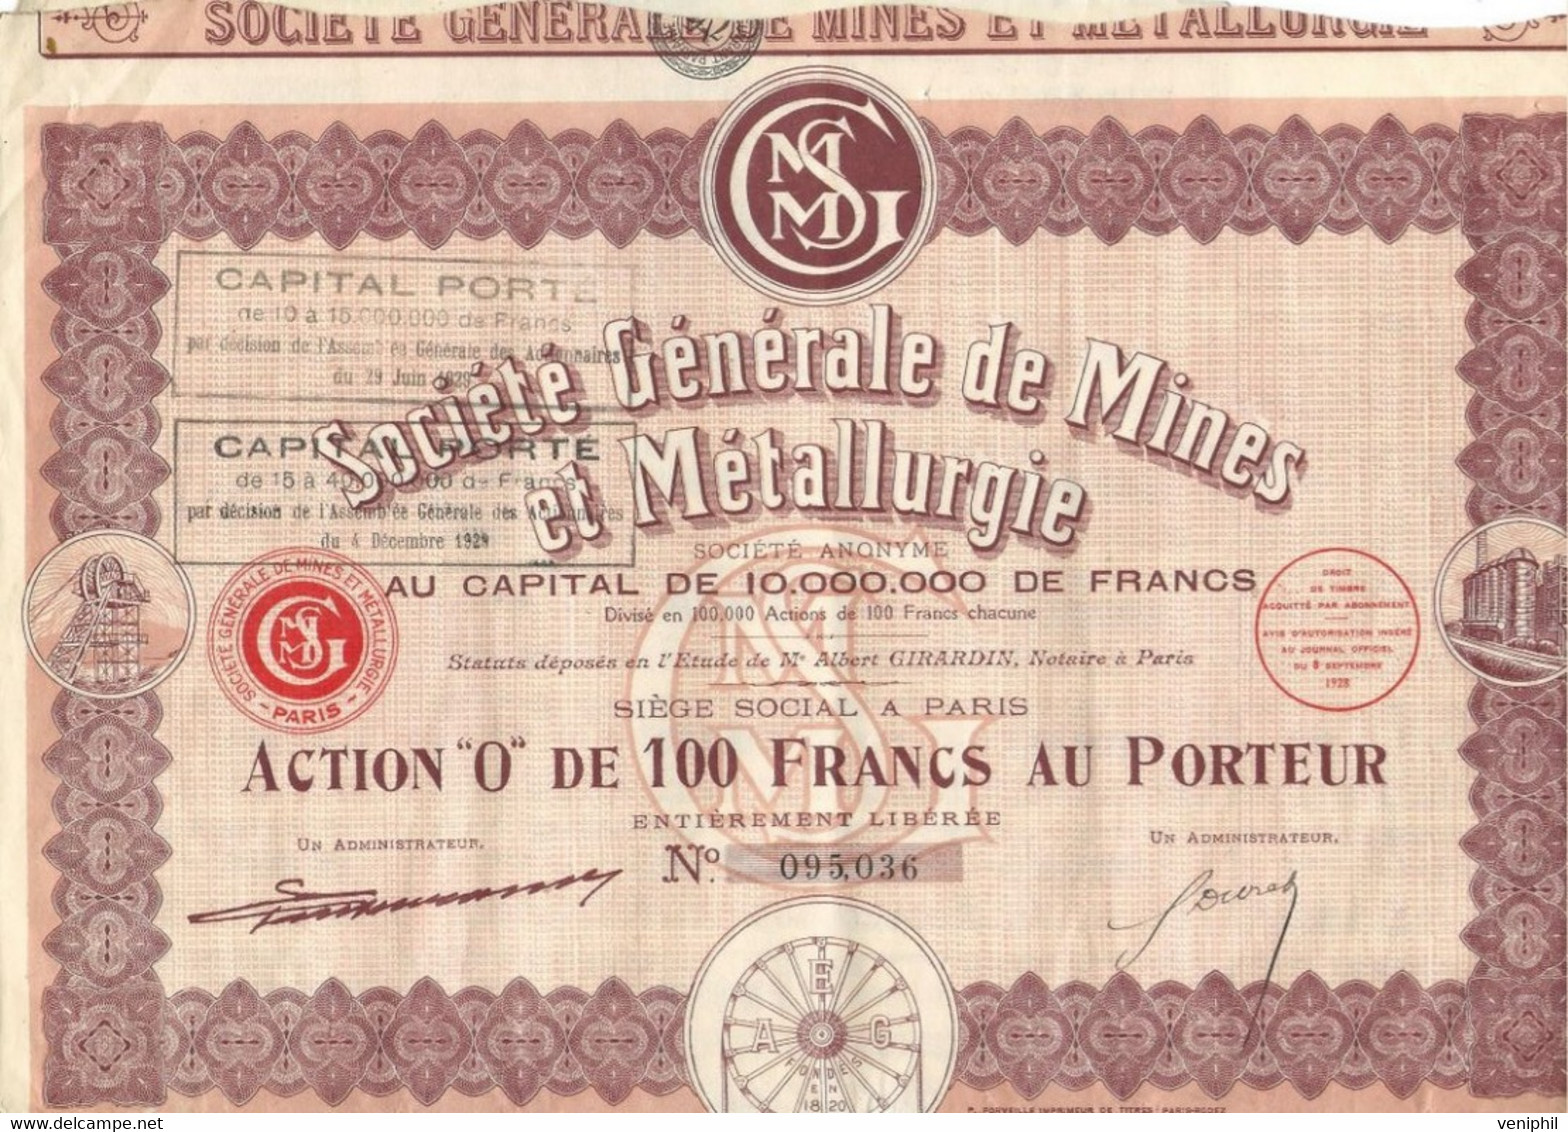 SOCIETE GENERALE DE MINES ET METALLURGIE -ACTION" 0 " DE 100 FRS -ANNEE 1928 - Mines